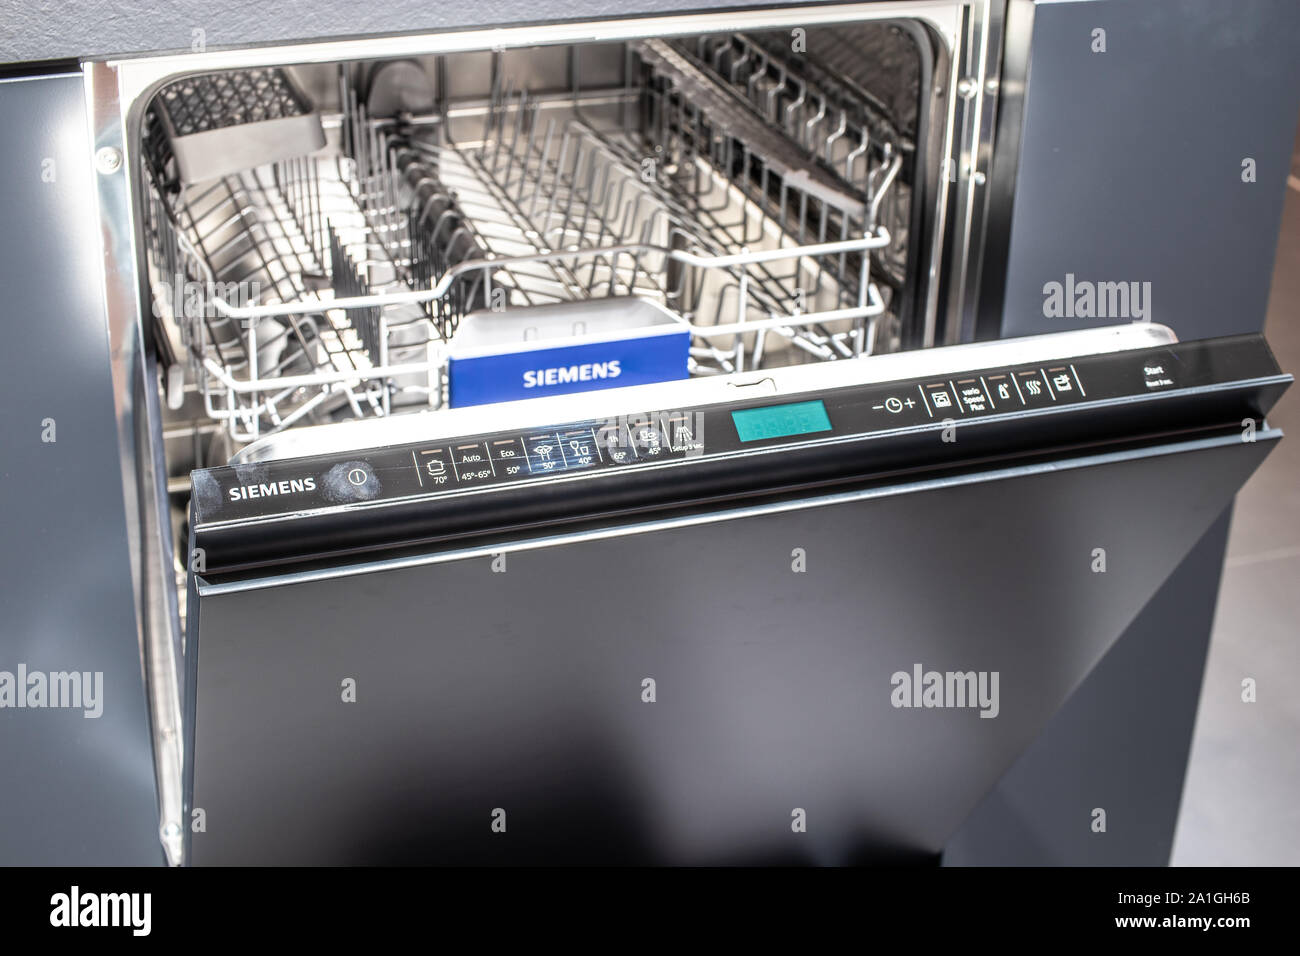 Berlin, Allemagne, Sep 2019, nouveau lave-vaisselle Siemens Siemens sur l' affichage, pavillon d'exposition d'exposition, stand au salon IFA 2019  Innovations mondiales Photo Stock - Alamy